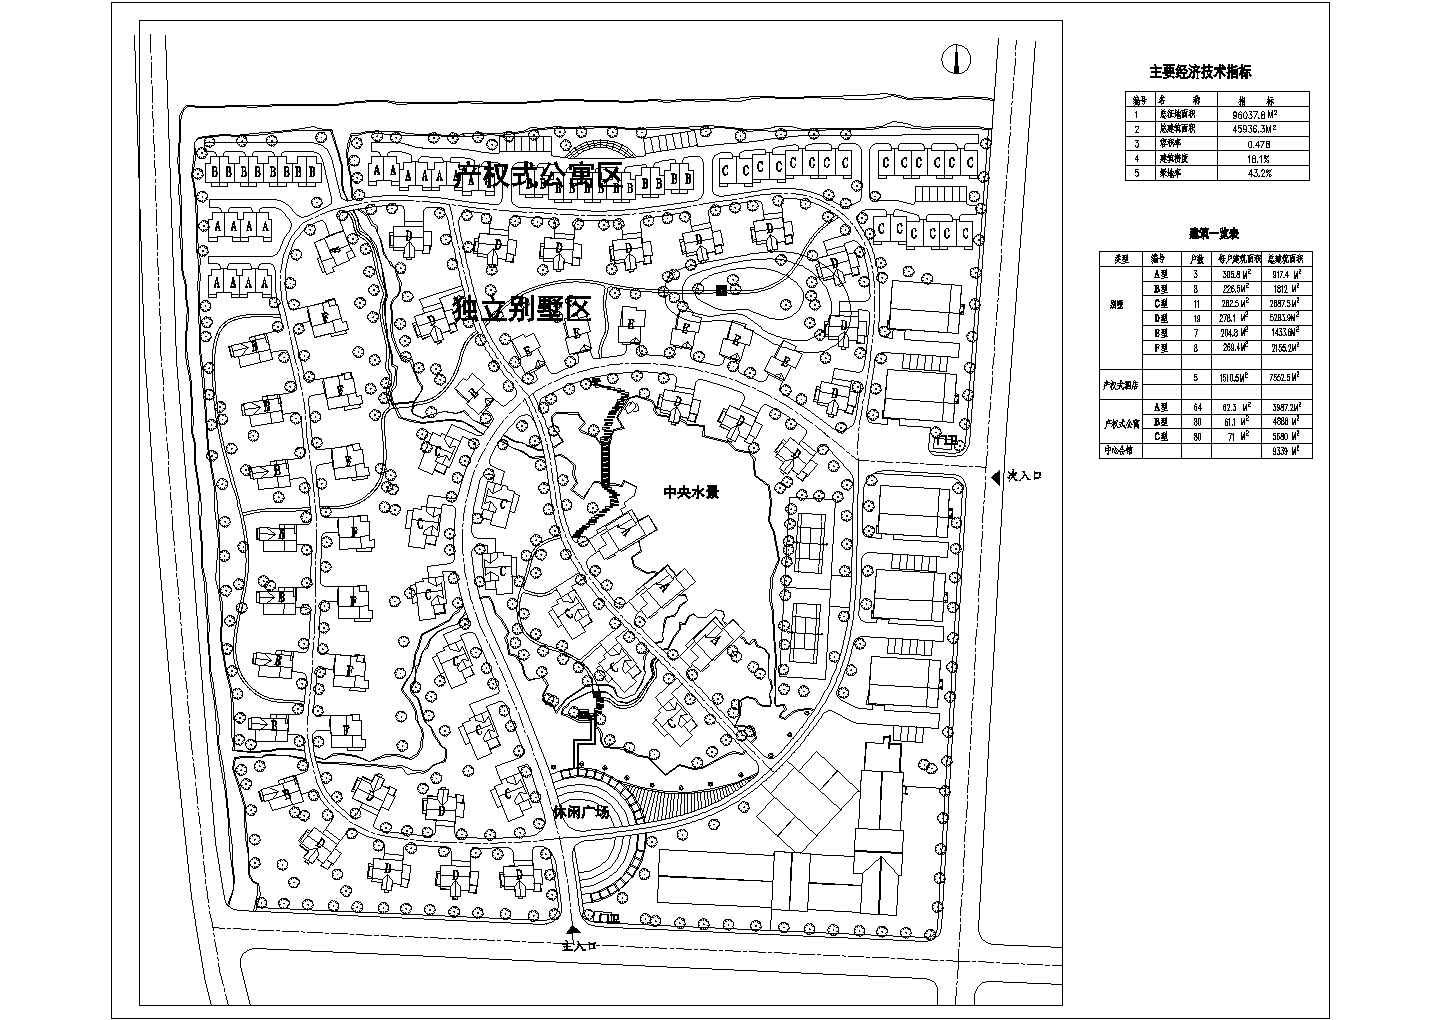 某地公寓别墅小区总体规划平面图纸